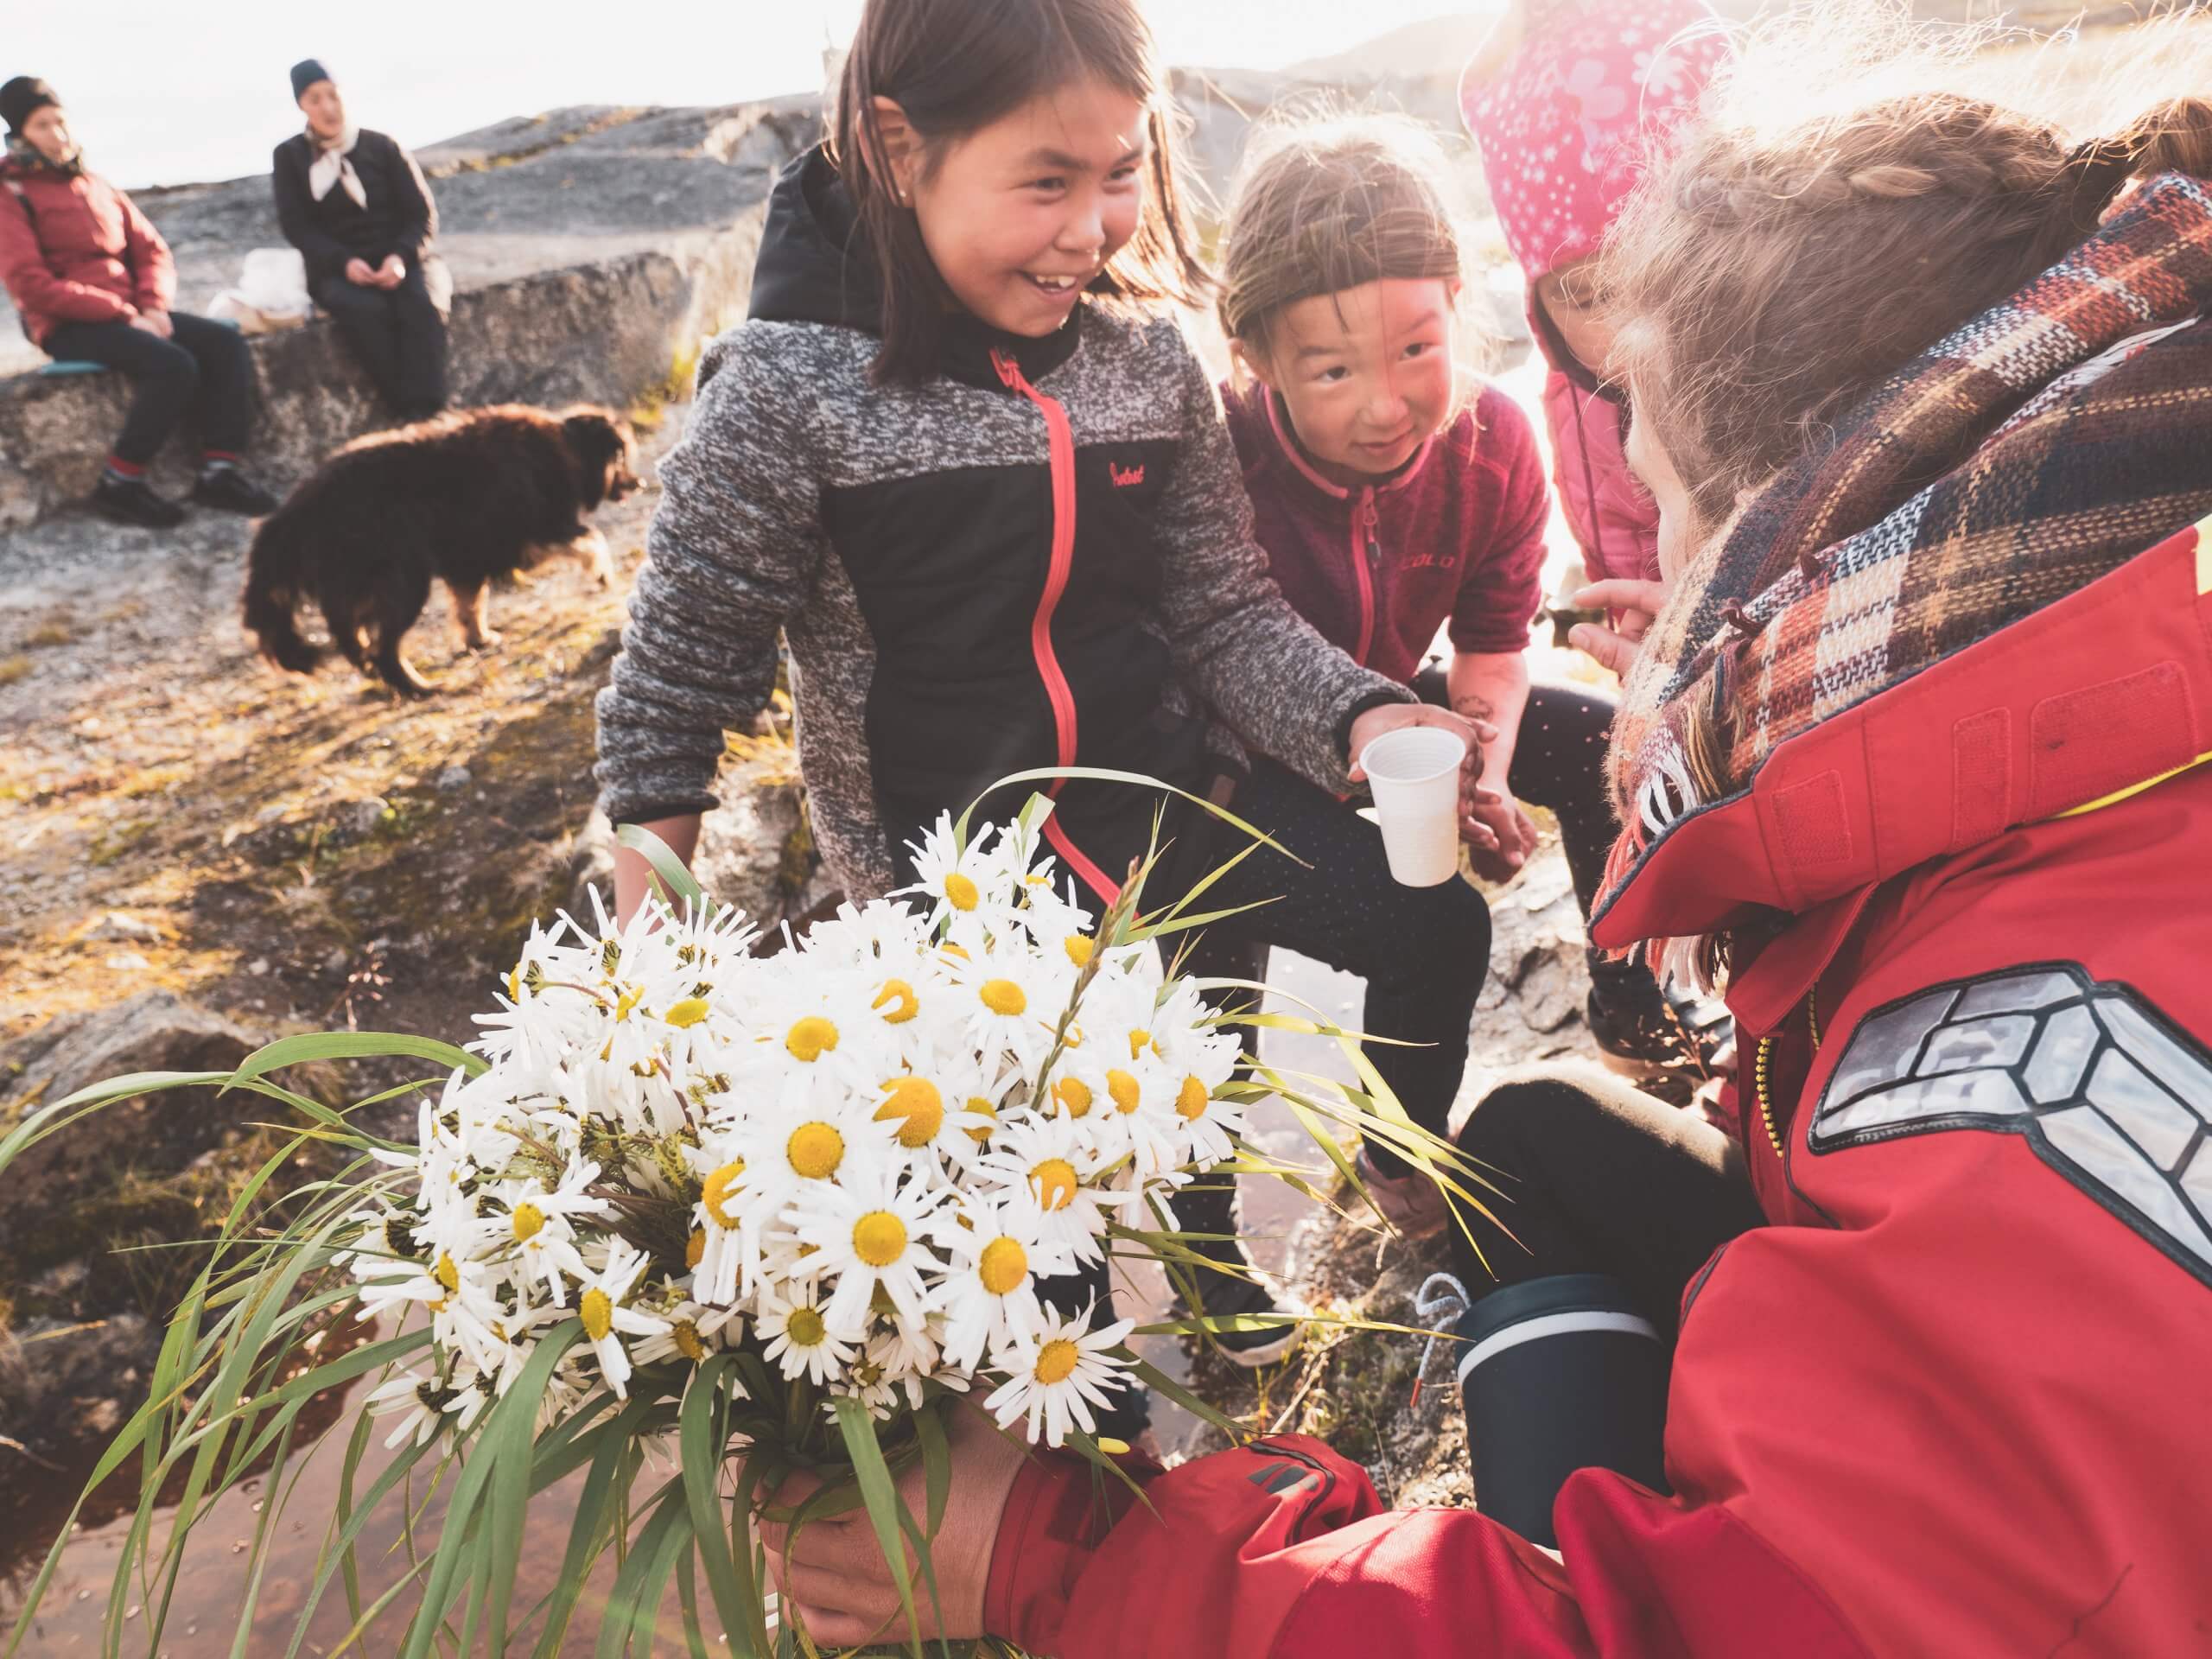 לאחר שיט של 14 יום, קרטר וצוותו הגיעו אל האי הקפוא גרינלנד שבלב האוקיינוס הארקטי. סימונין פוגשת ילדים מקומיים בגרינלנד, צילום: Julien Fumard